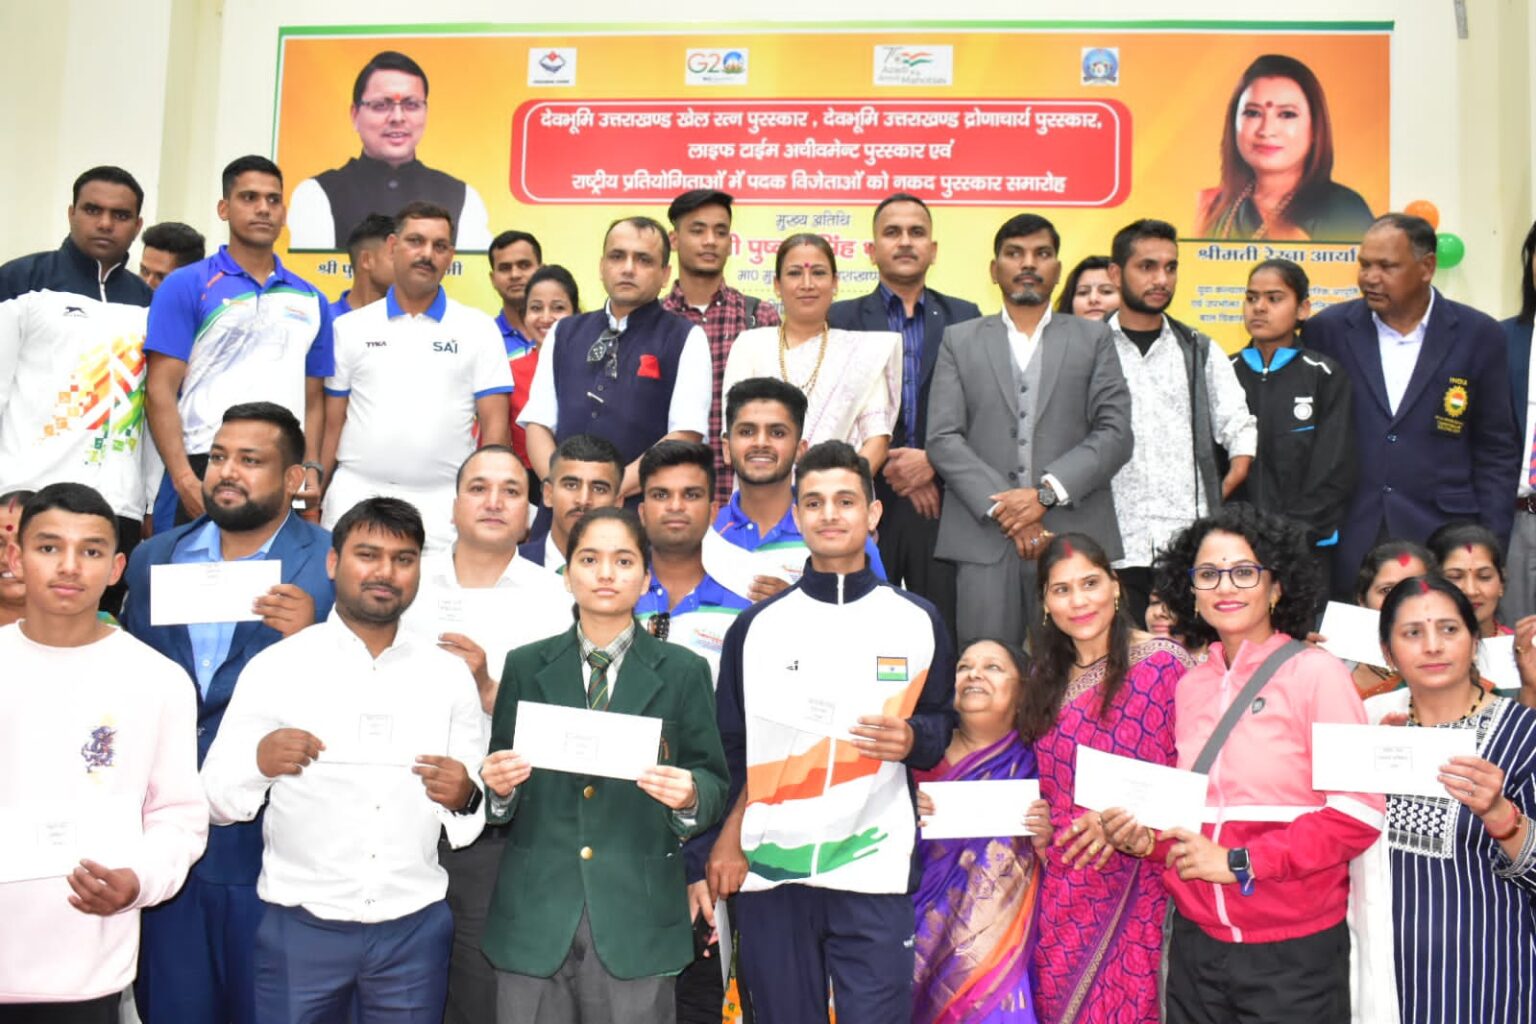 मुख्यमंत्री पुष्कर सिंह धामी और खेल मंत्री रेखा आर्या ने खेल रत्न, द्रोणाचार्य और लाइफटाइम अचीवमेंट पुरस्कार से खिलाड़ियो को किया सम्मानित